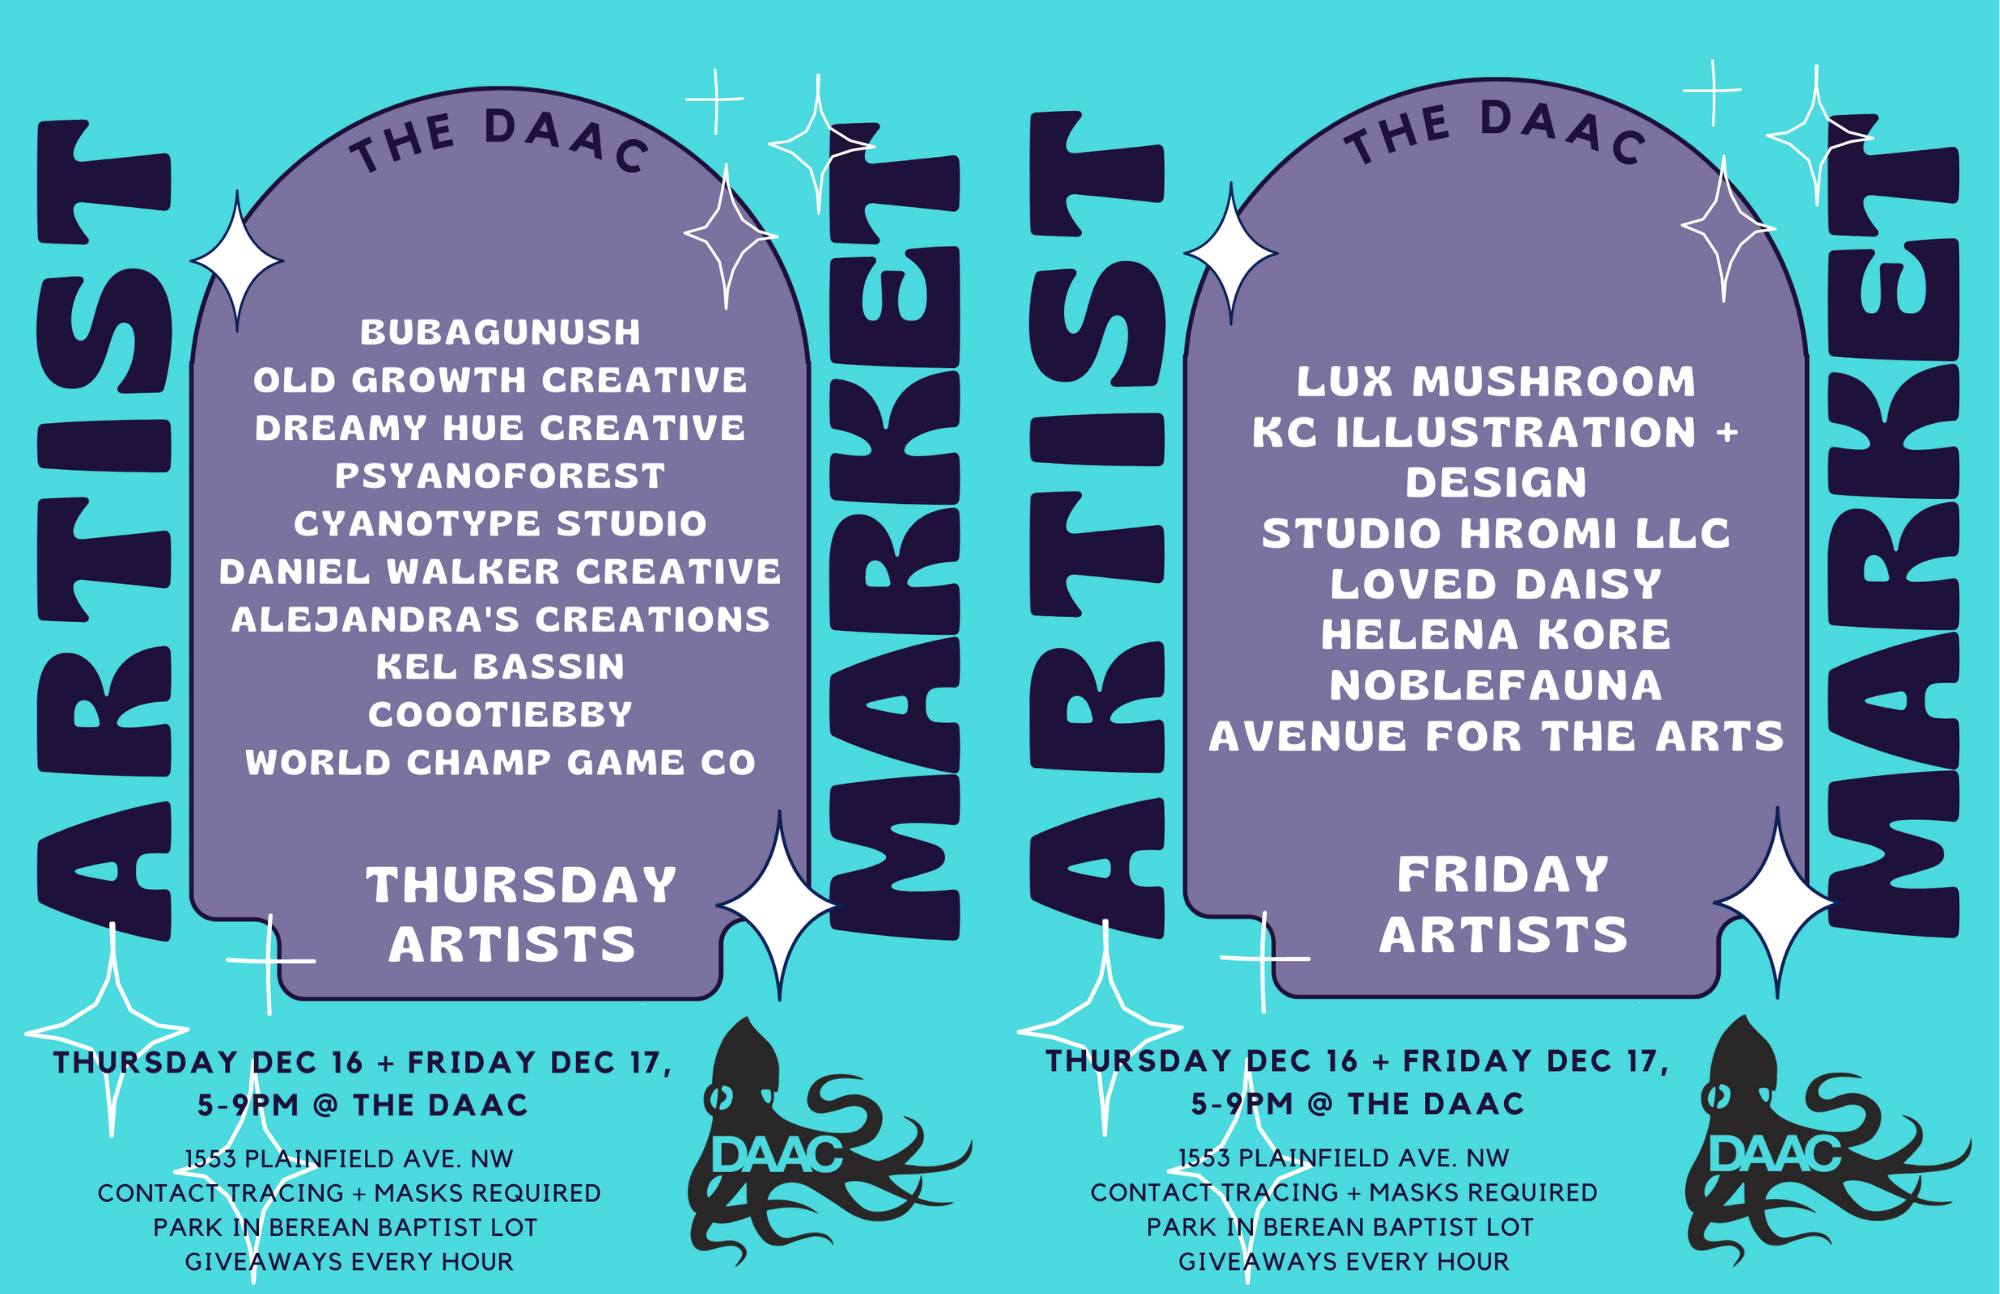 Artist Market - Thursday Dec 16 + Friday Dec 17, 5-9PM at The DAAC